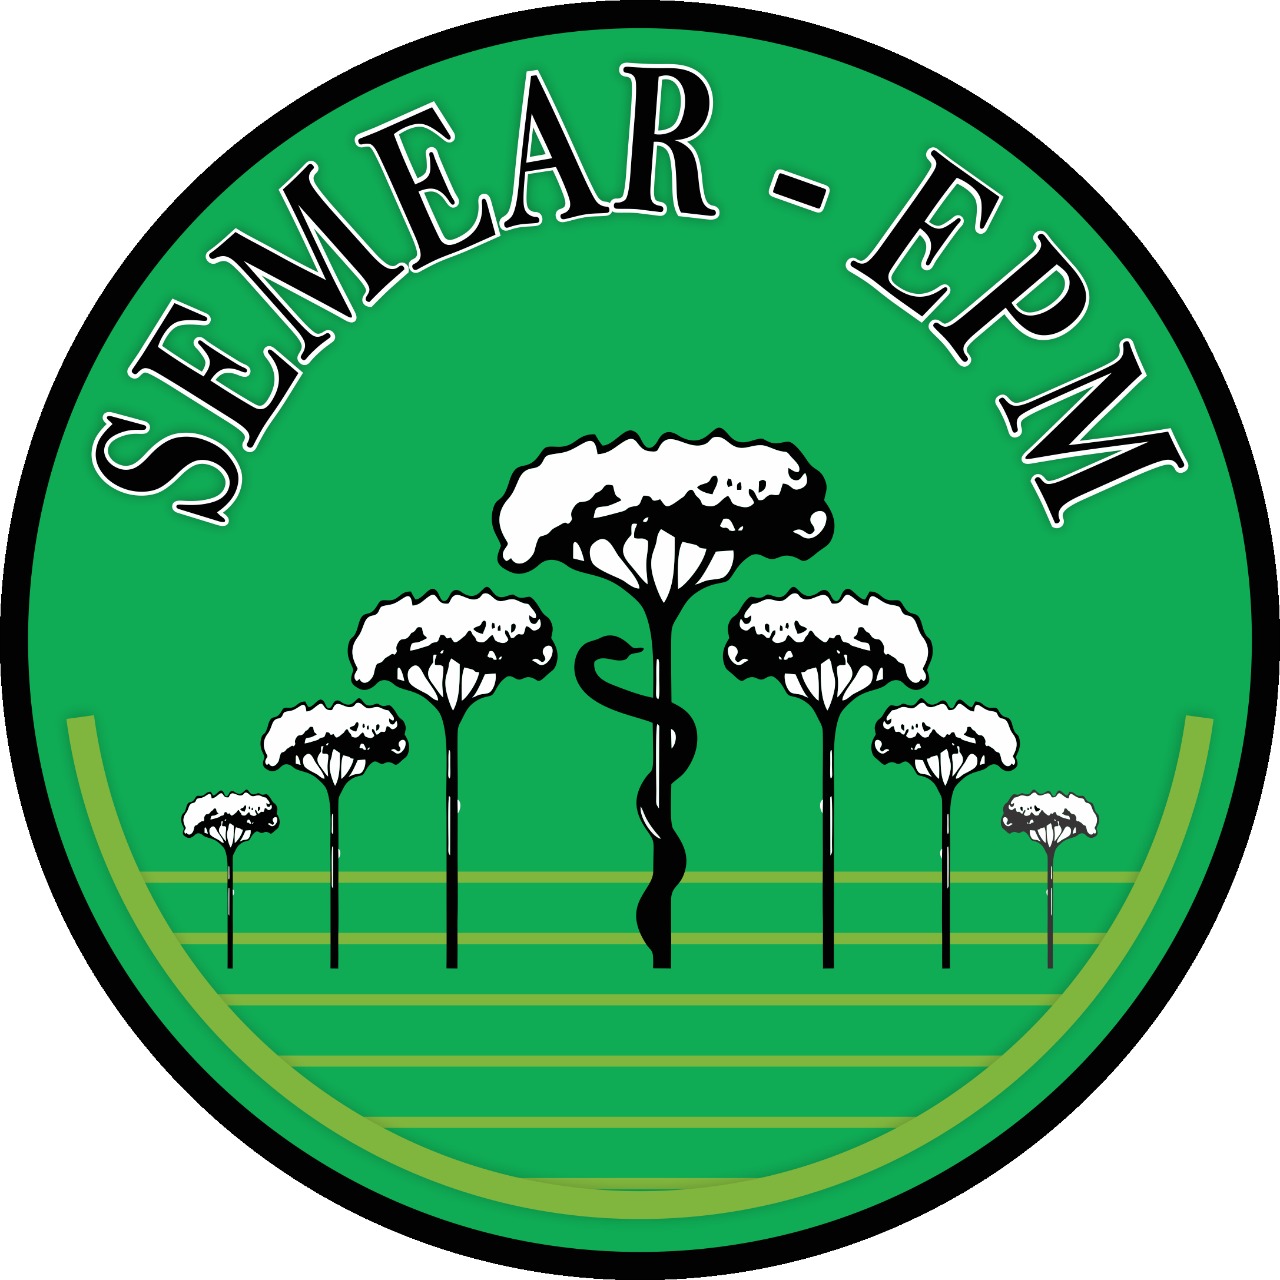 SEMEAR Logo 